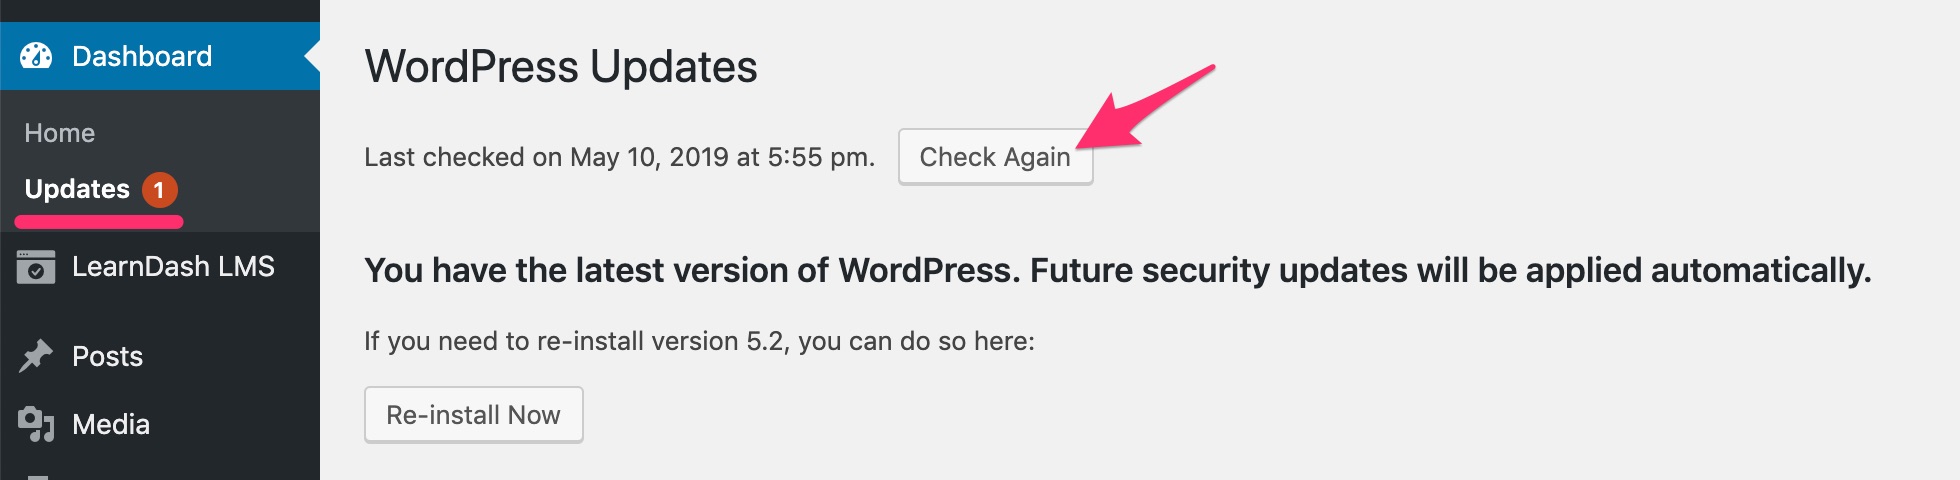 检查 WordPress 更新按钮